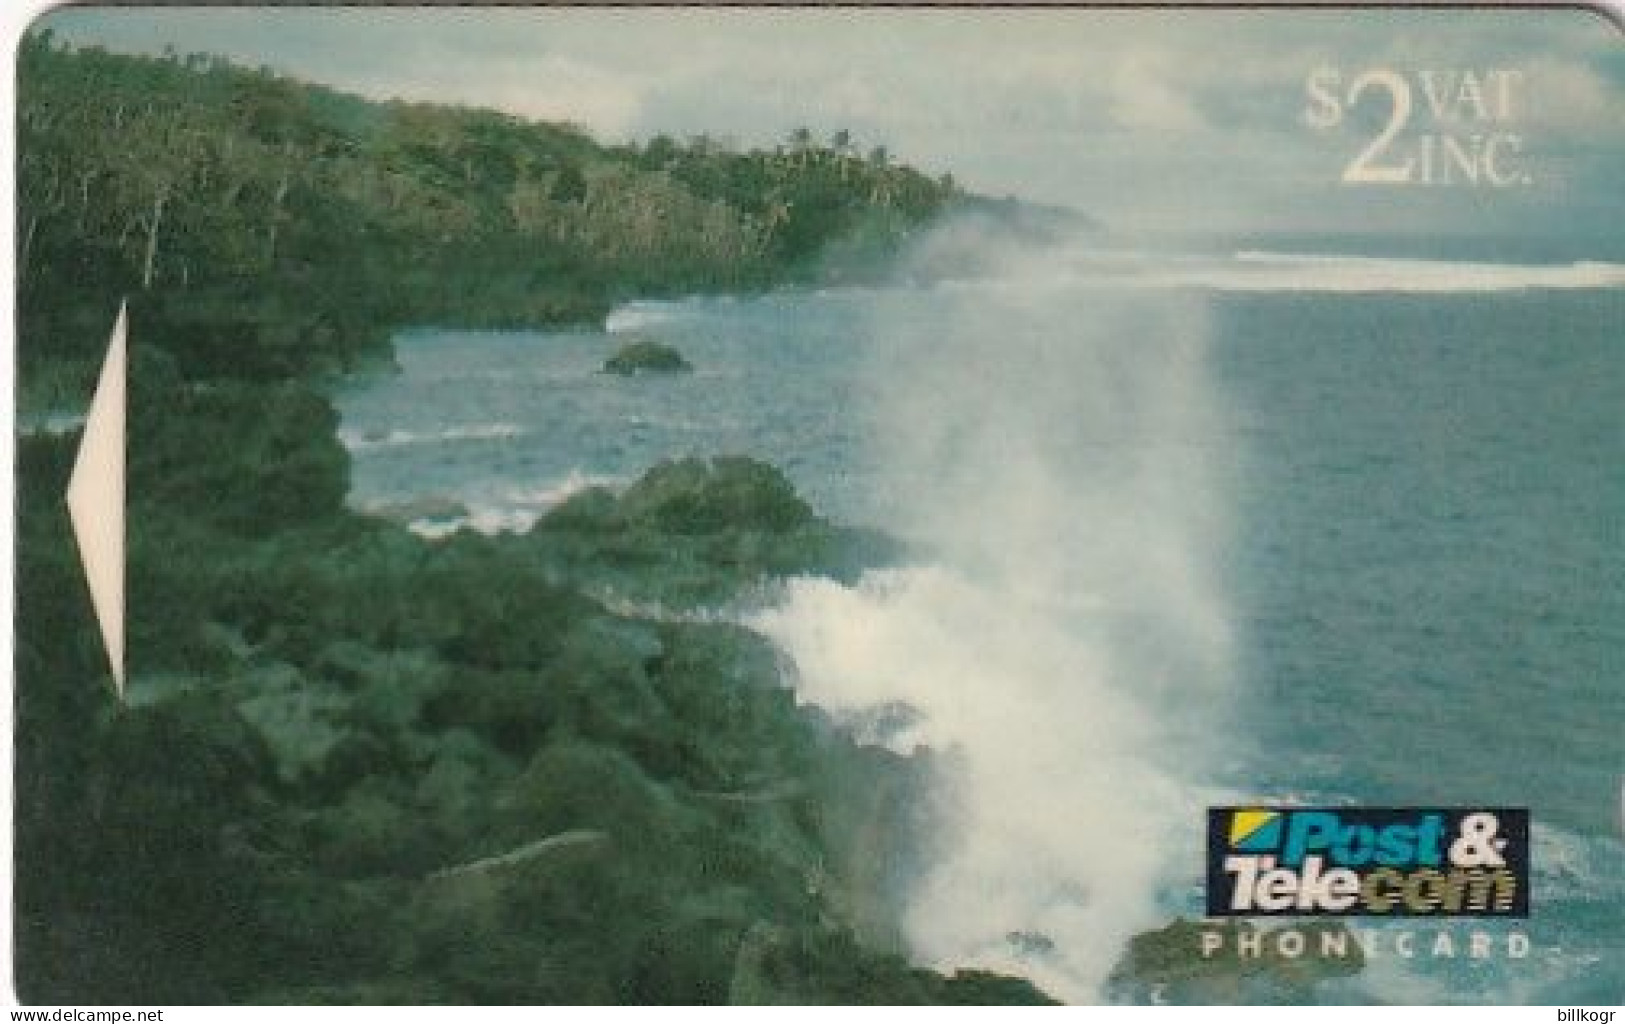 FIJI ISL.(GPT) - Blow Holes/Taveuni Island Fiji, CN : 04FJB/C, Tirage %50000, Used - Fiji